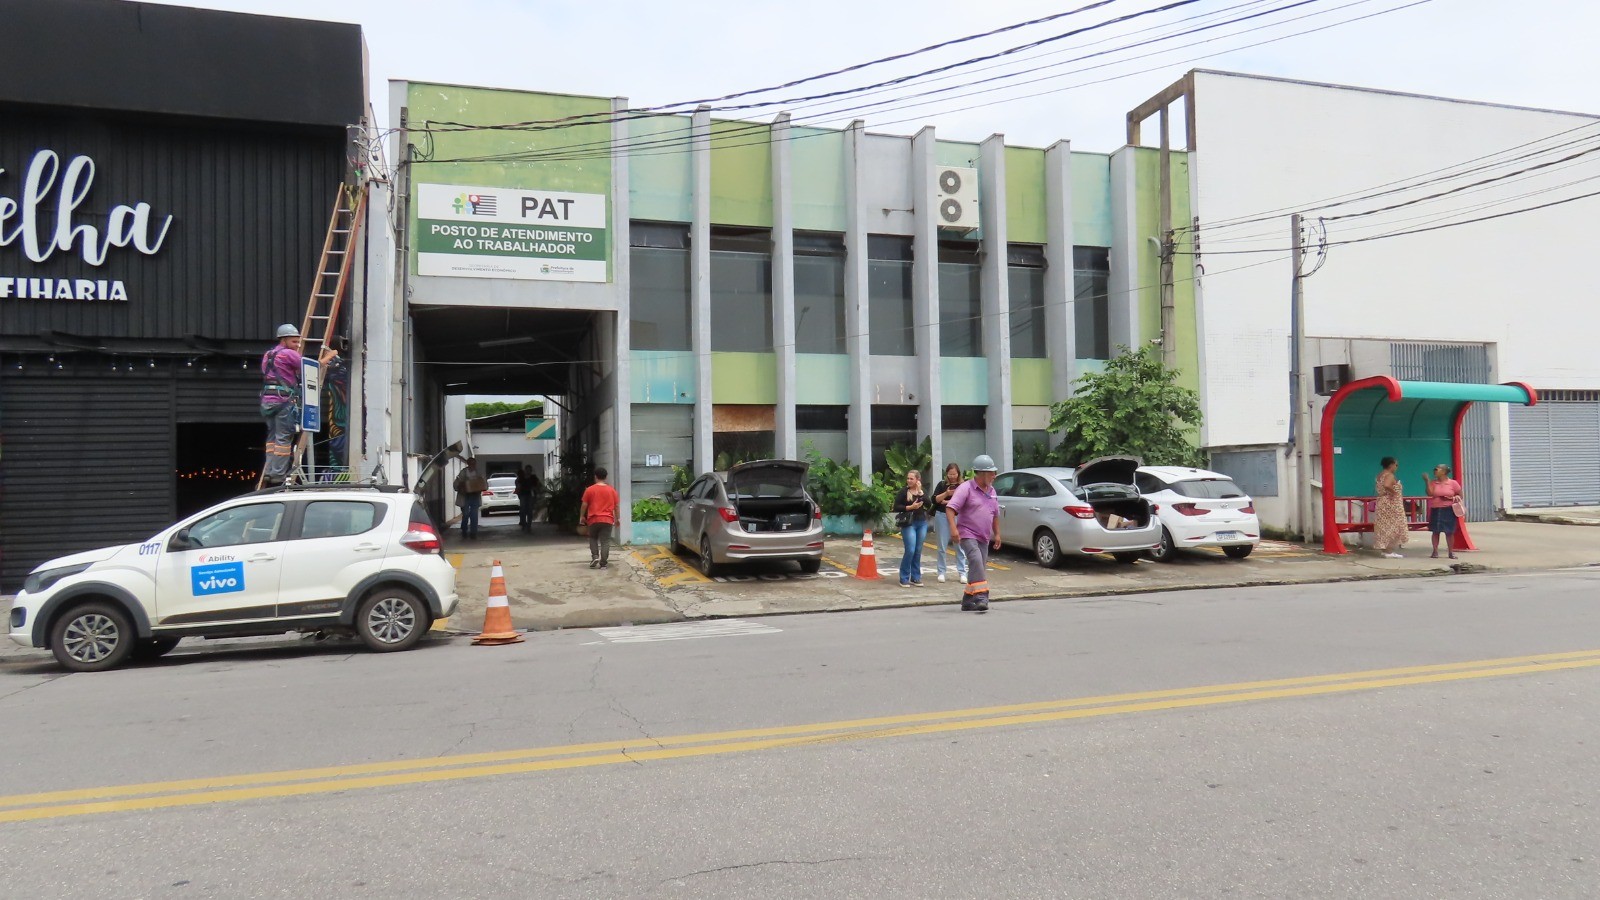 Com prédio em reforma, PAT de Pindamonhangaba atende em novo endereço